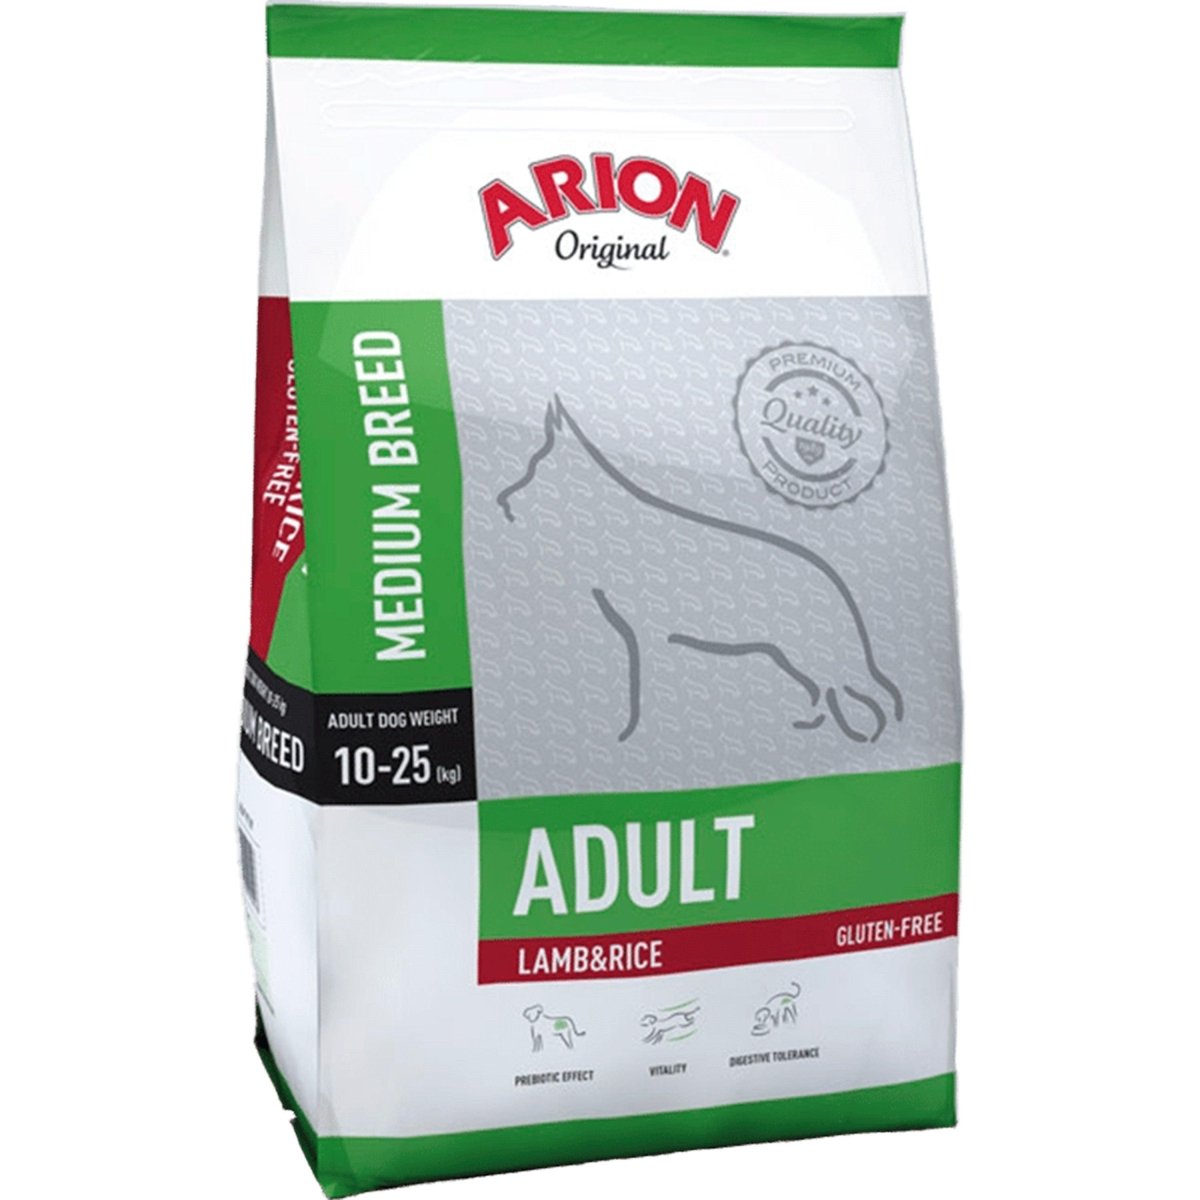 Billede af Arion Original Adult Medium Breed Lamb & Rice - 3 kg